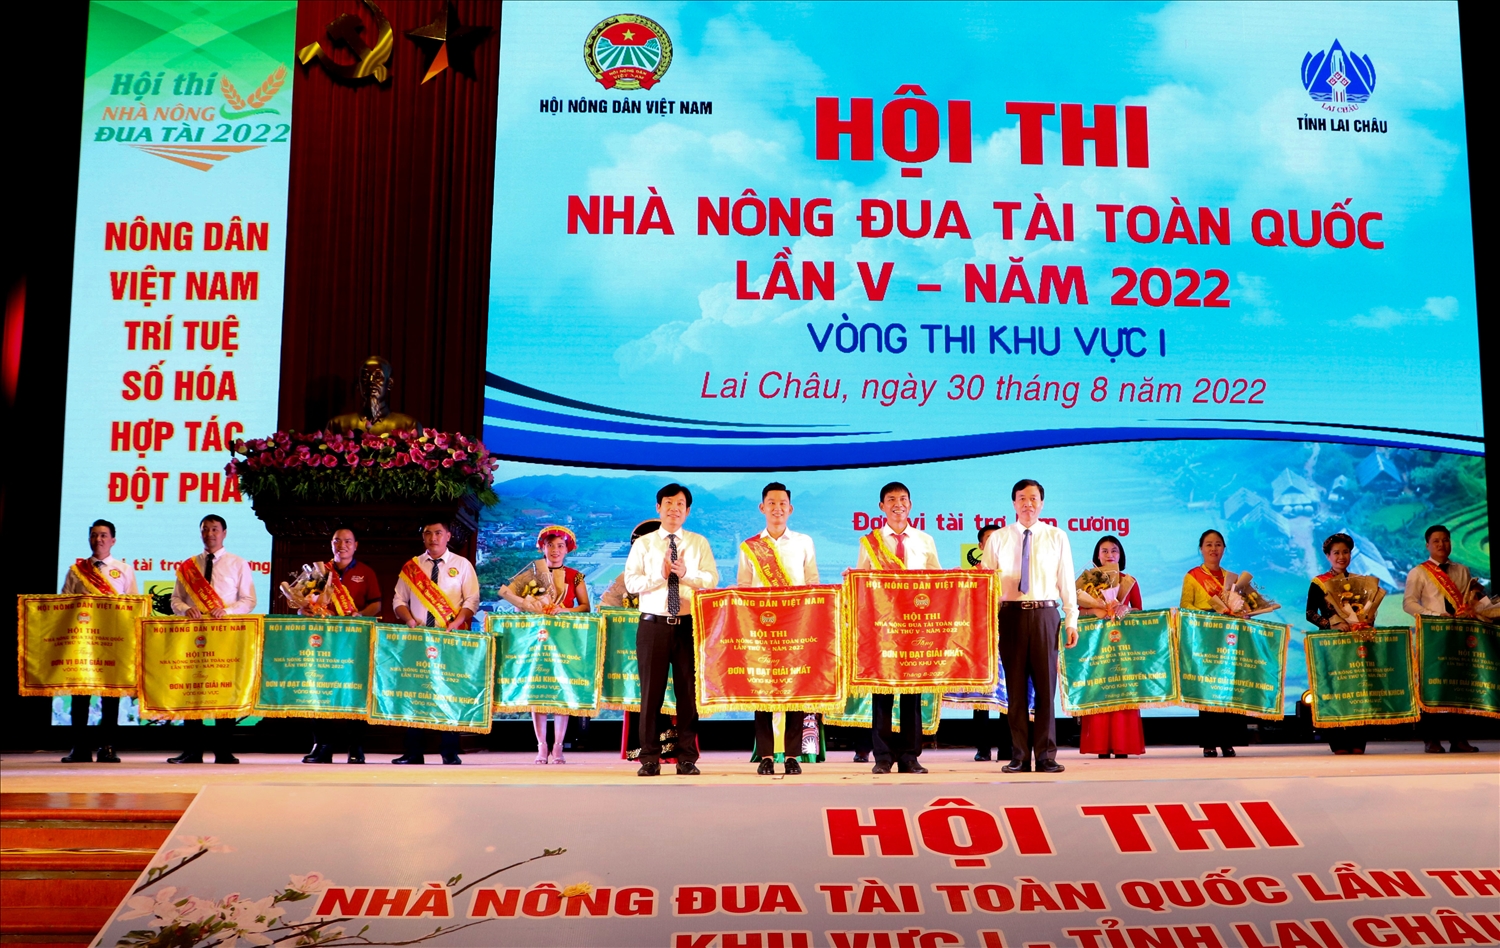 Ban Tổ chức Hội thi trao giải nhất cho 2 đội Lai Châu và Tuyên Quang